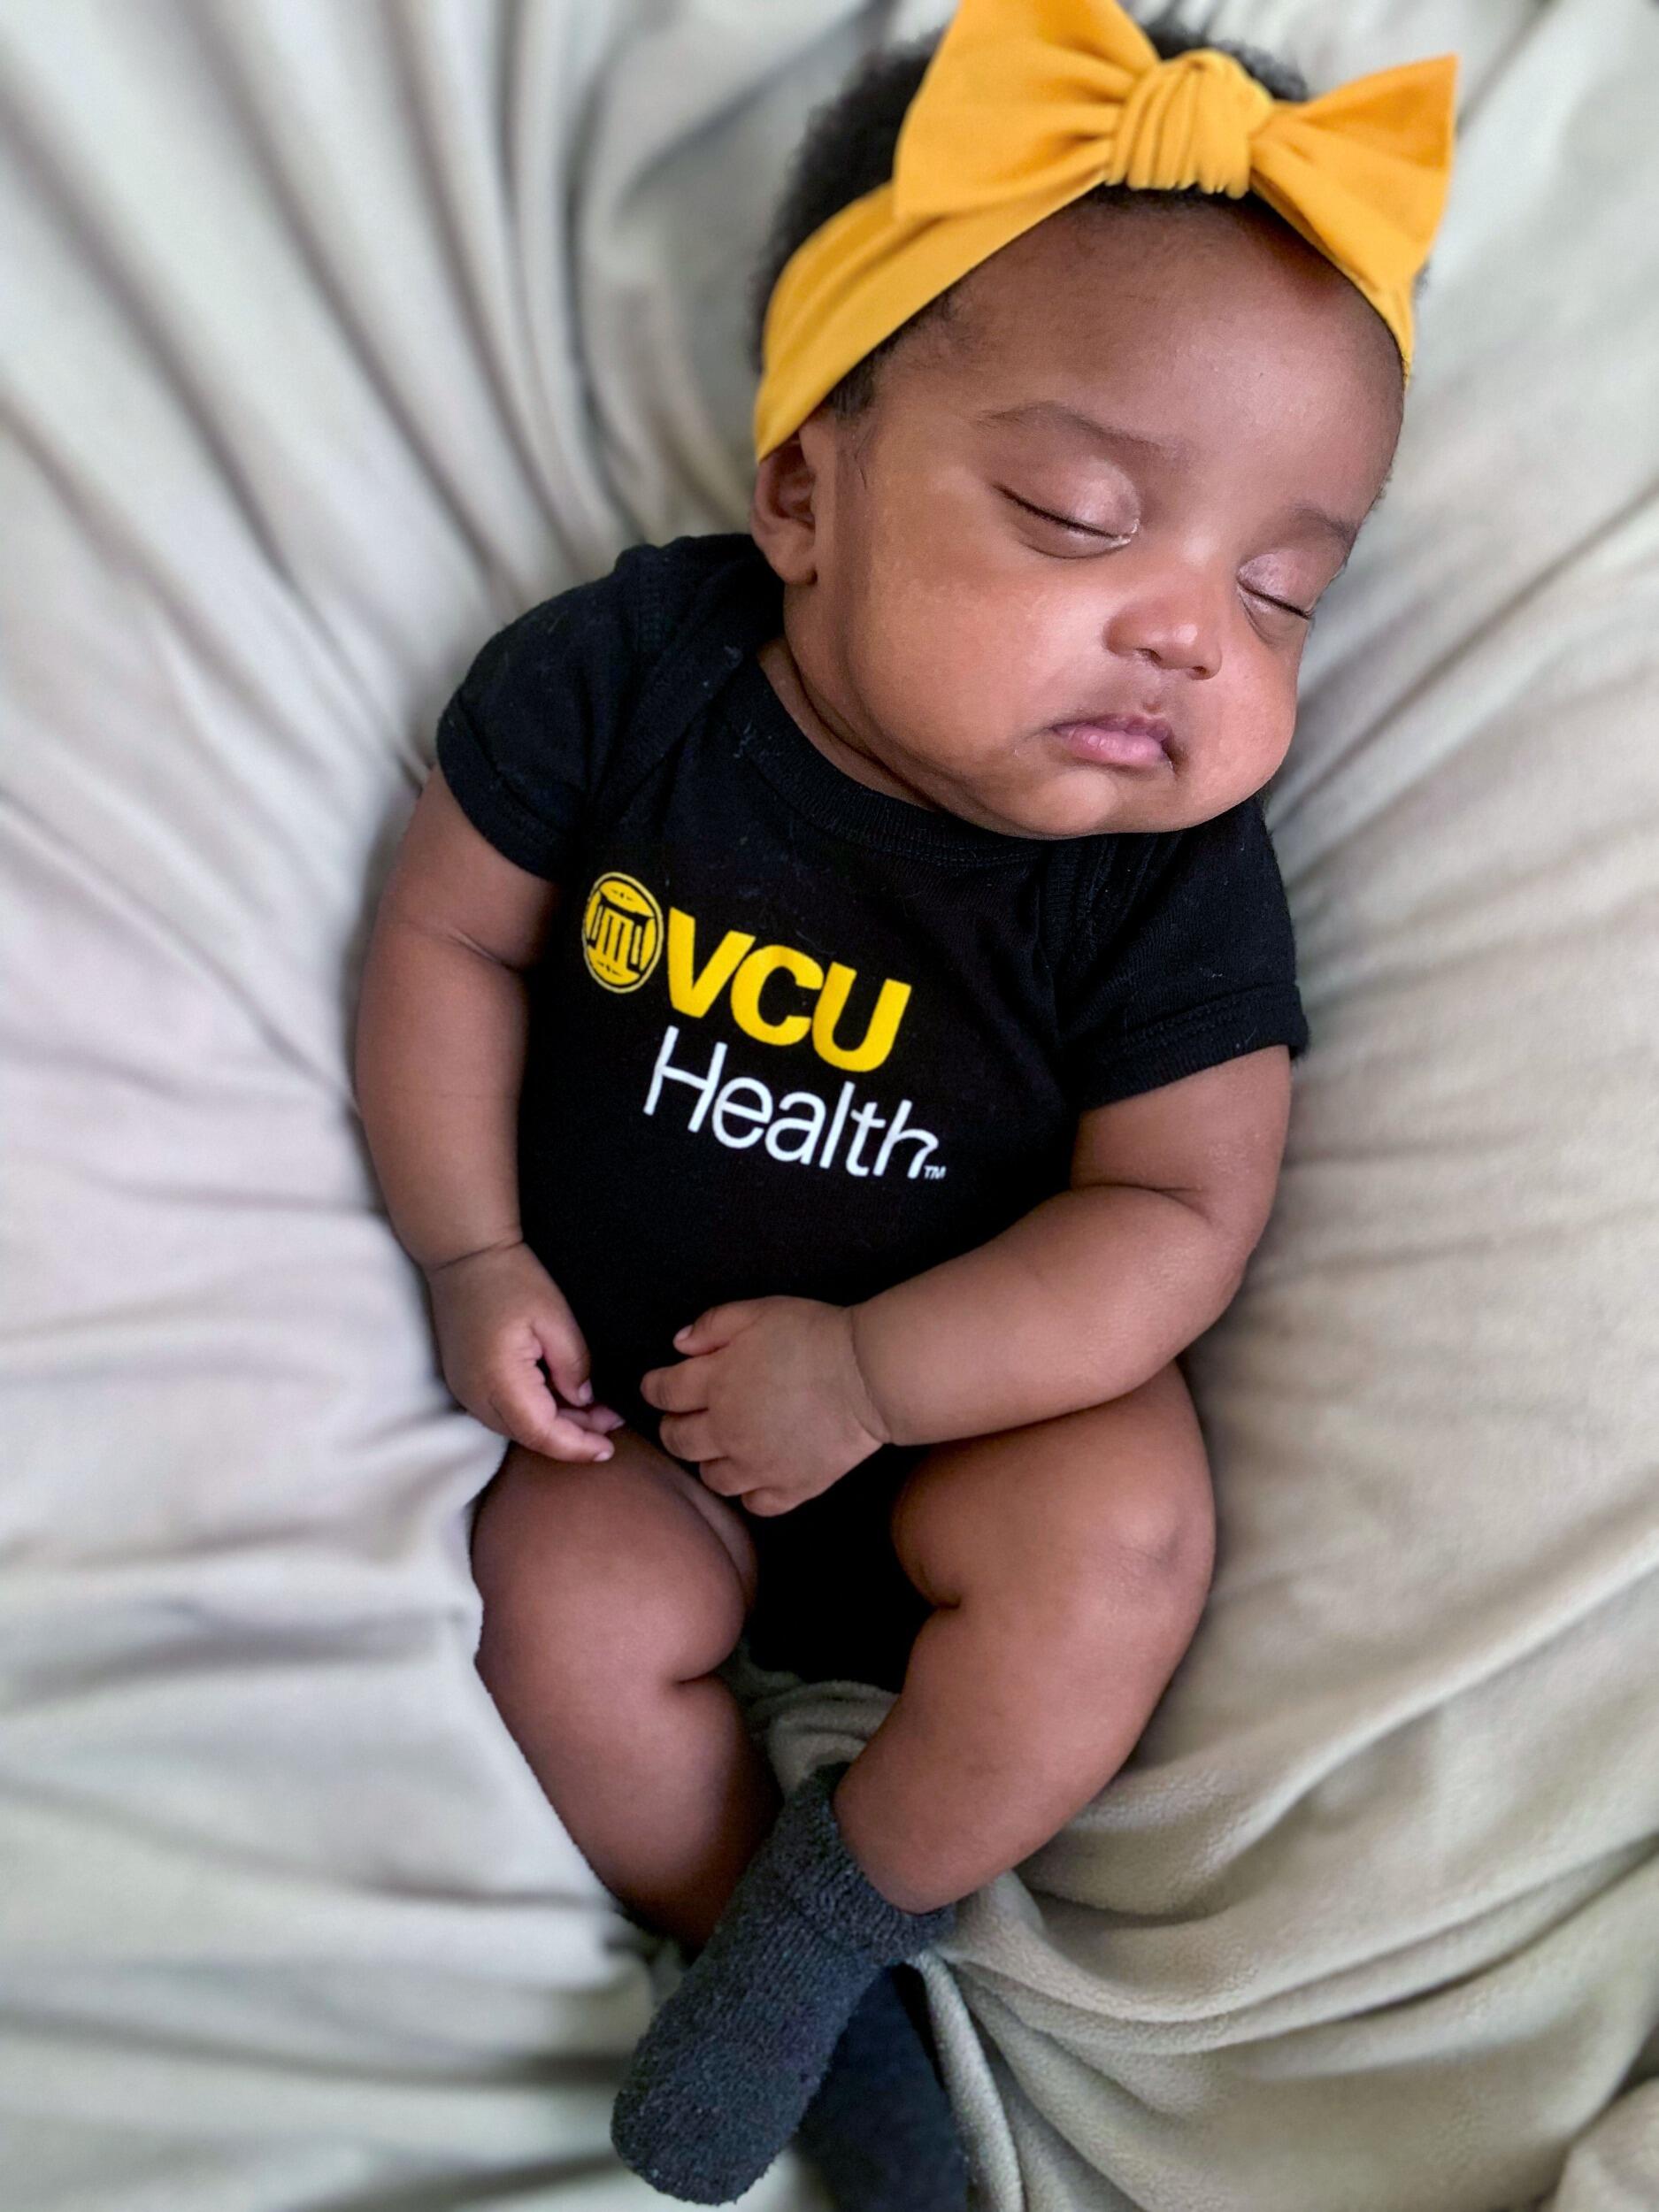 A newborn wearing a VCU Health onesie.